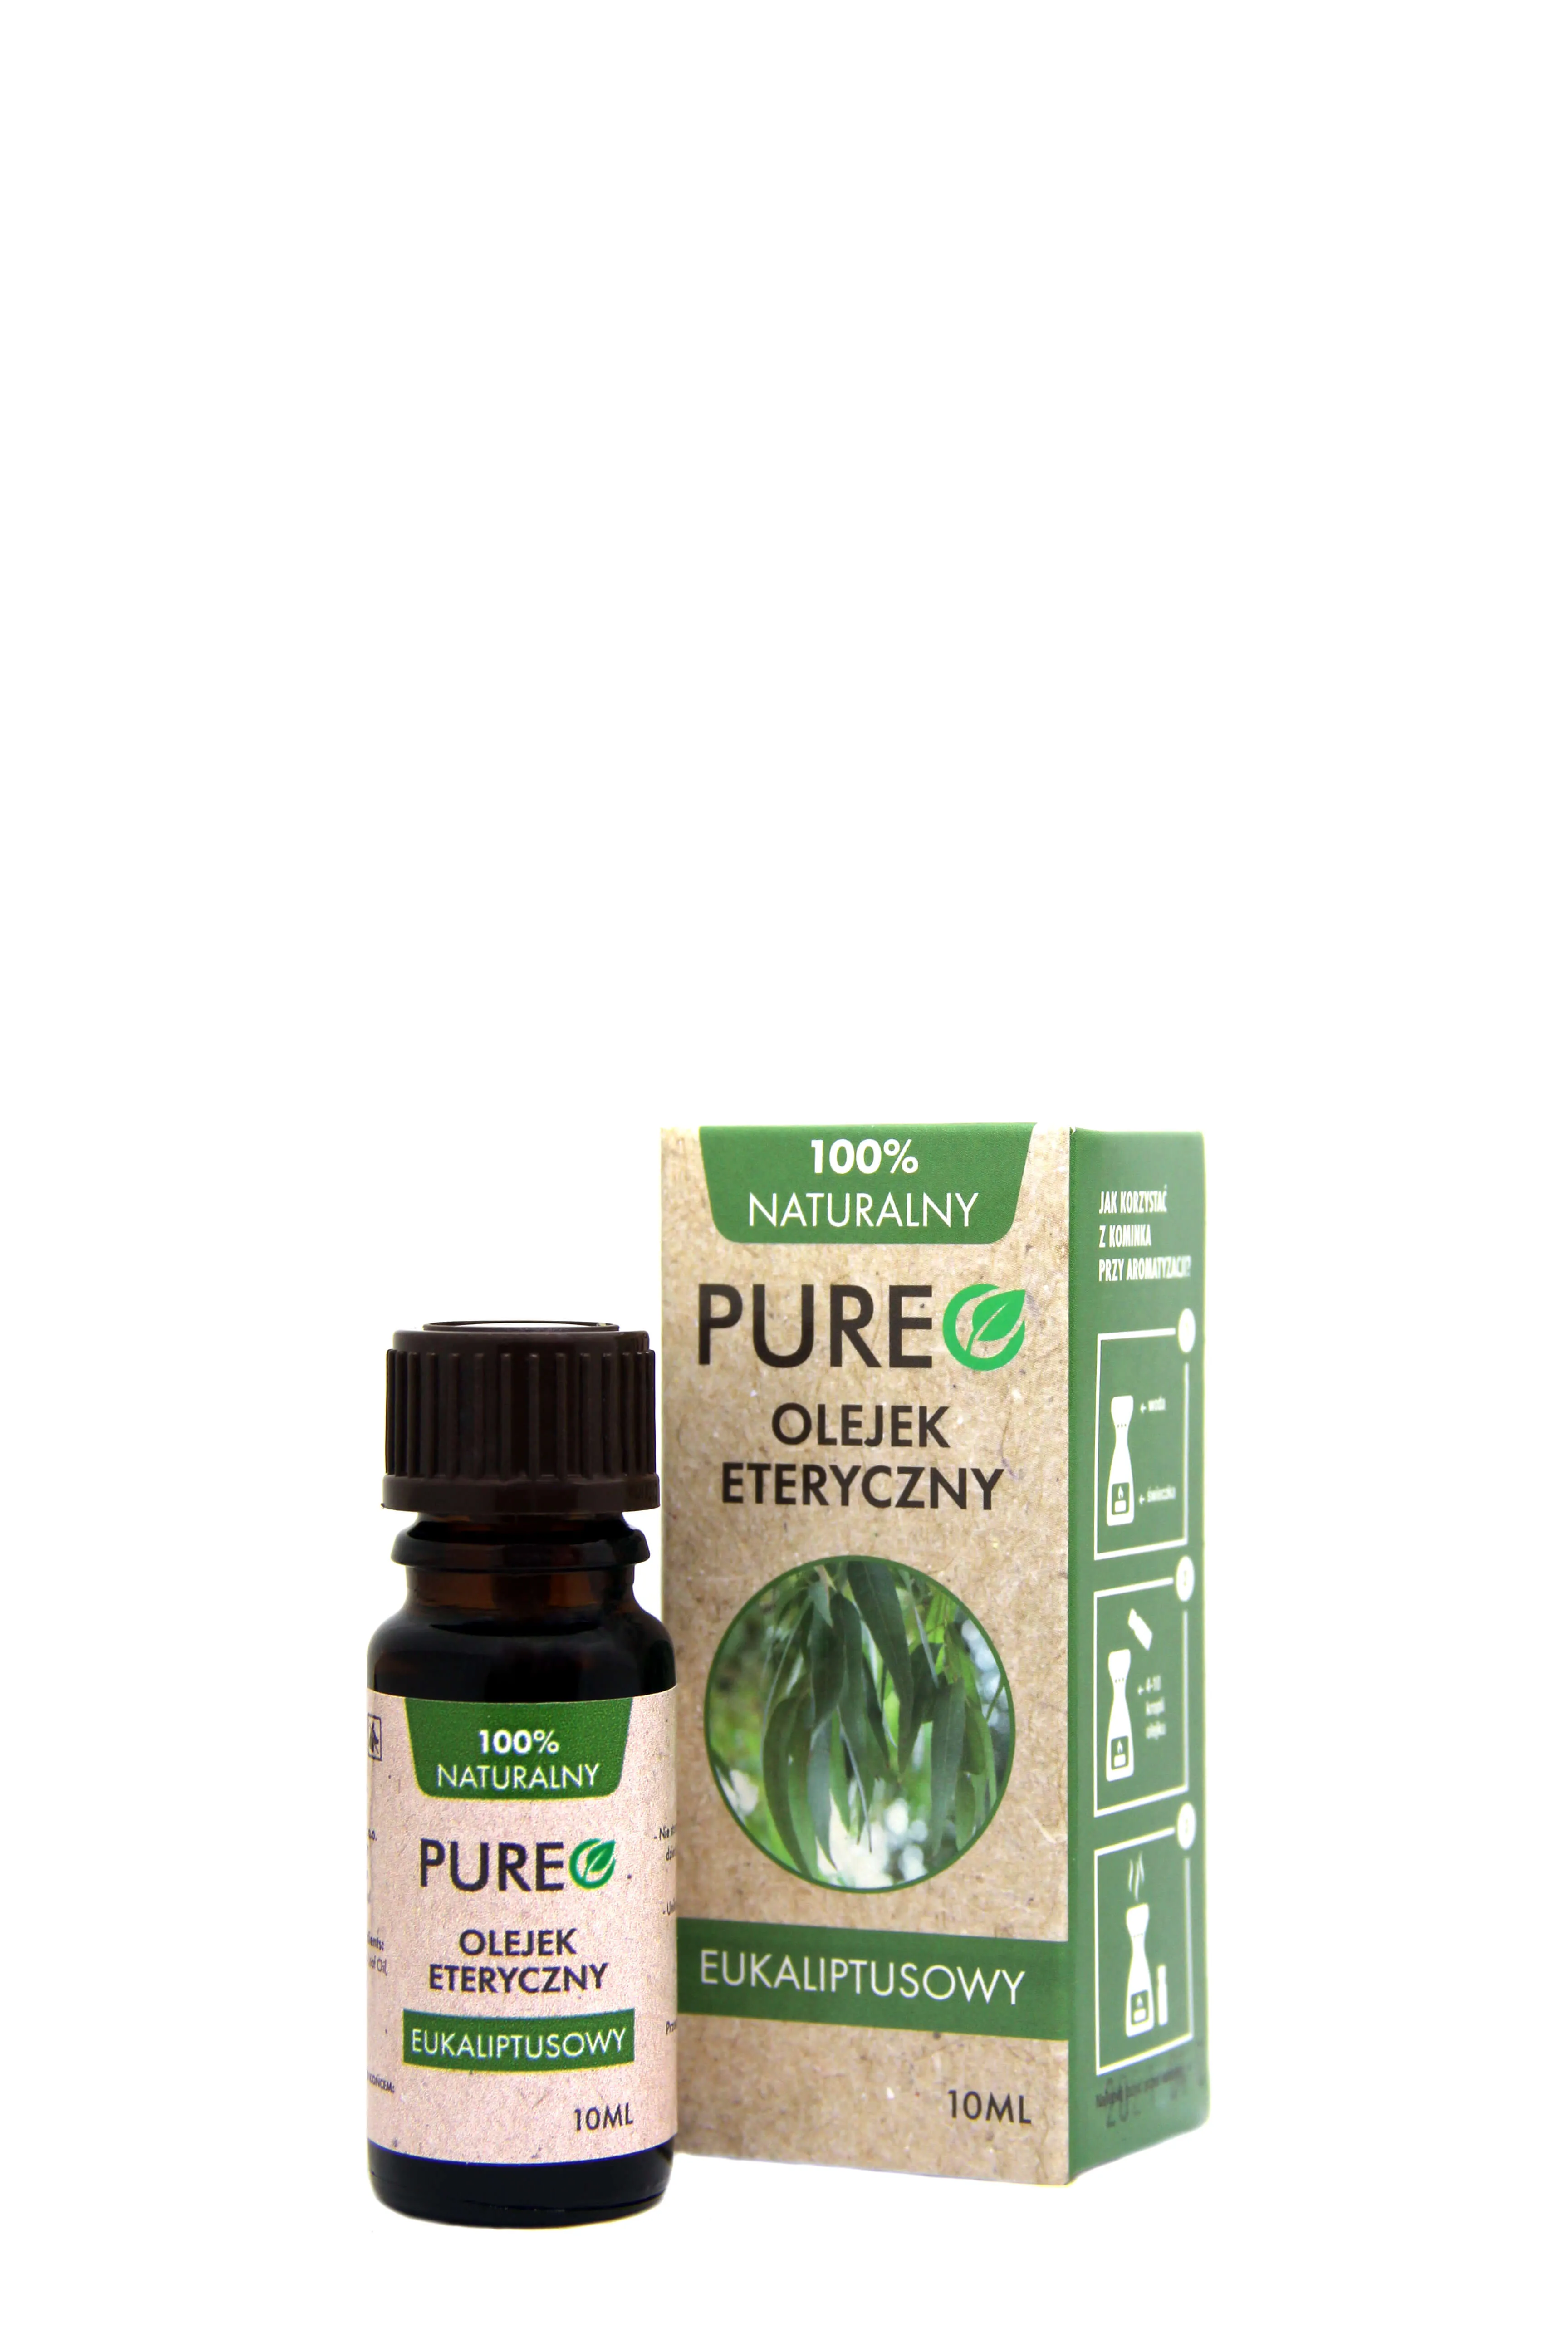 Pureo, olejek eteryczny eukaliptusowy, 10 ml